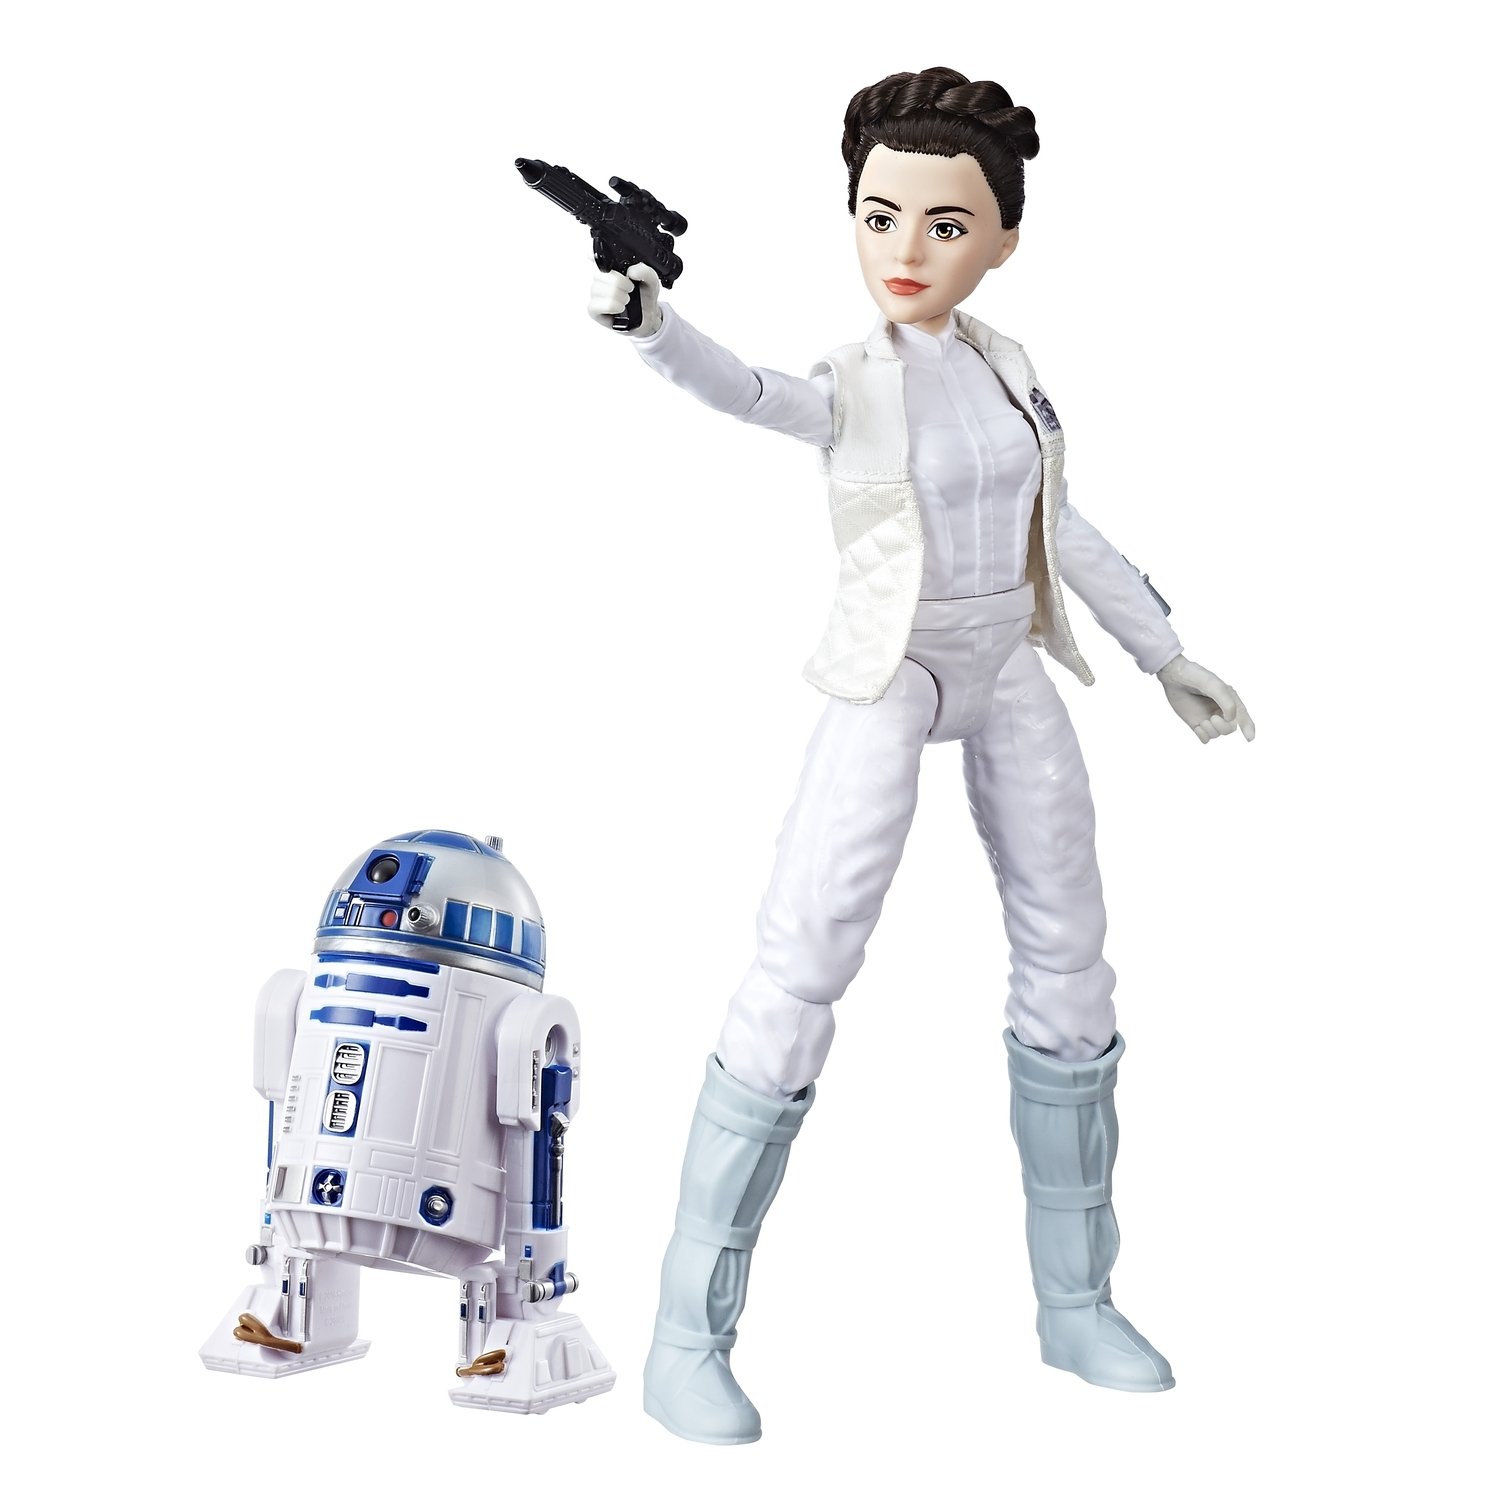 Игровой набор фигурок Princess Leia Organa & R2D2